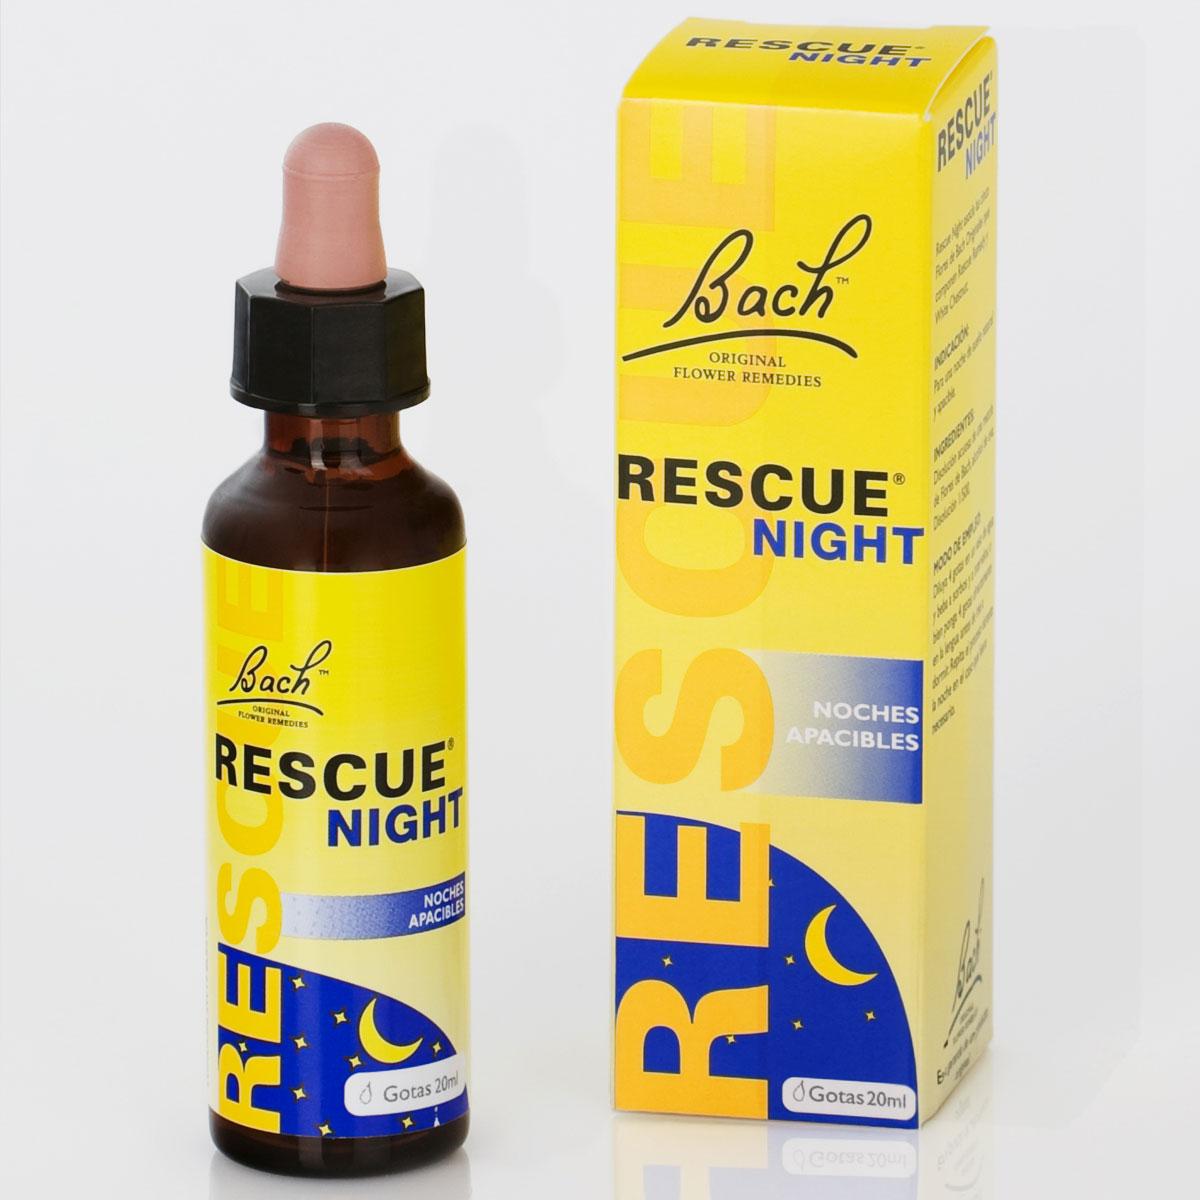 Foto Rescue remedy night 20 ml. - flores de bach rescue remedy